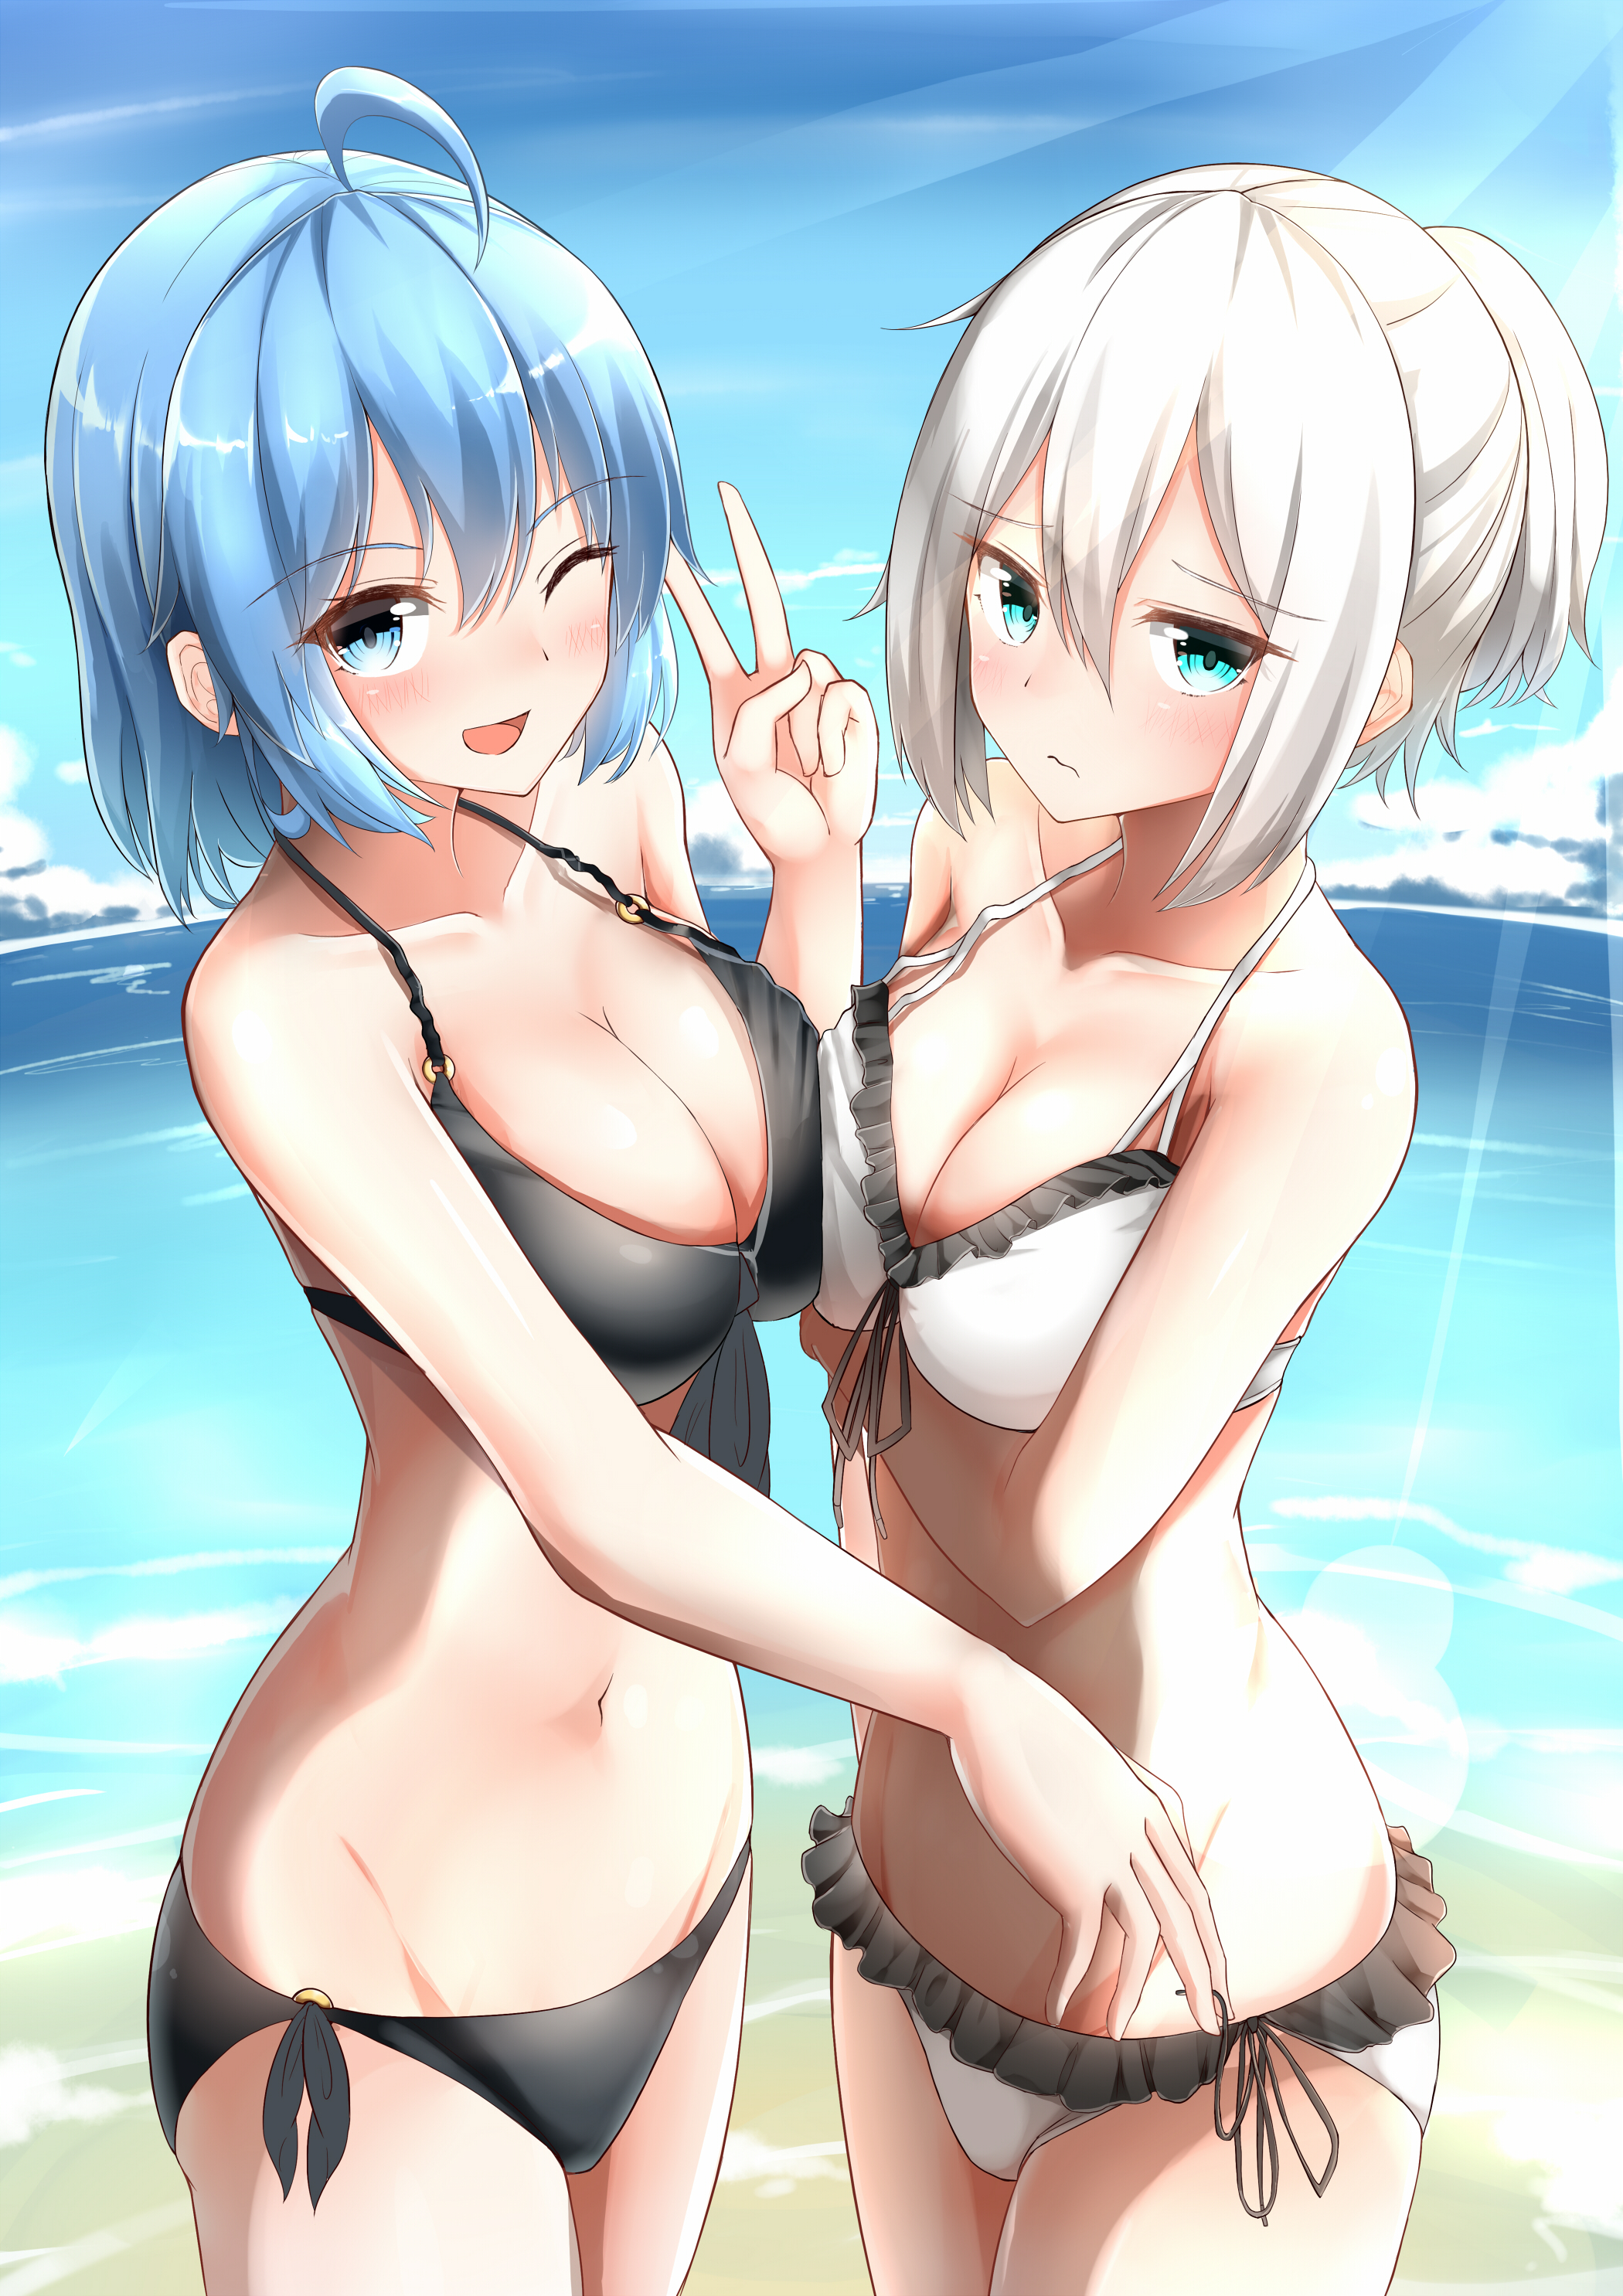 Anime 2100x2971 boobs cleavage blushing bikini beach boobs on boobs blue hair white hair blue eyes wink anime girls Moyoron